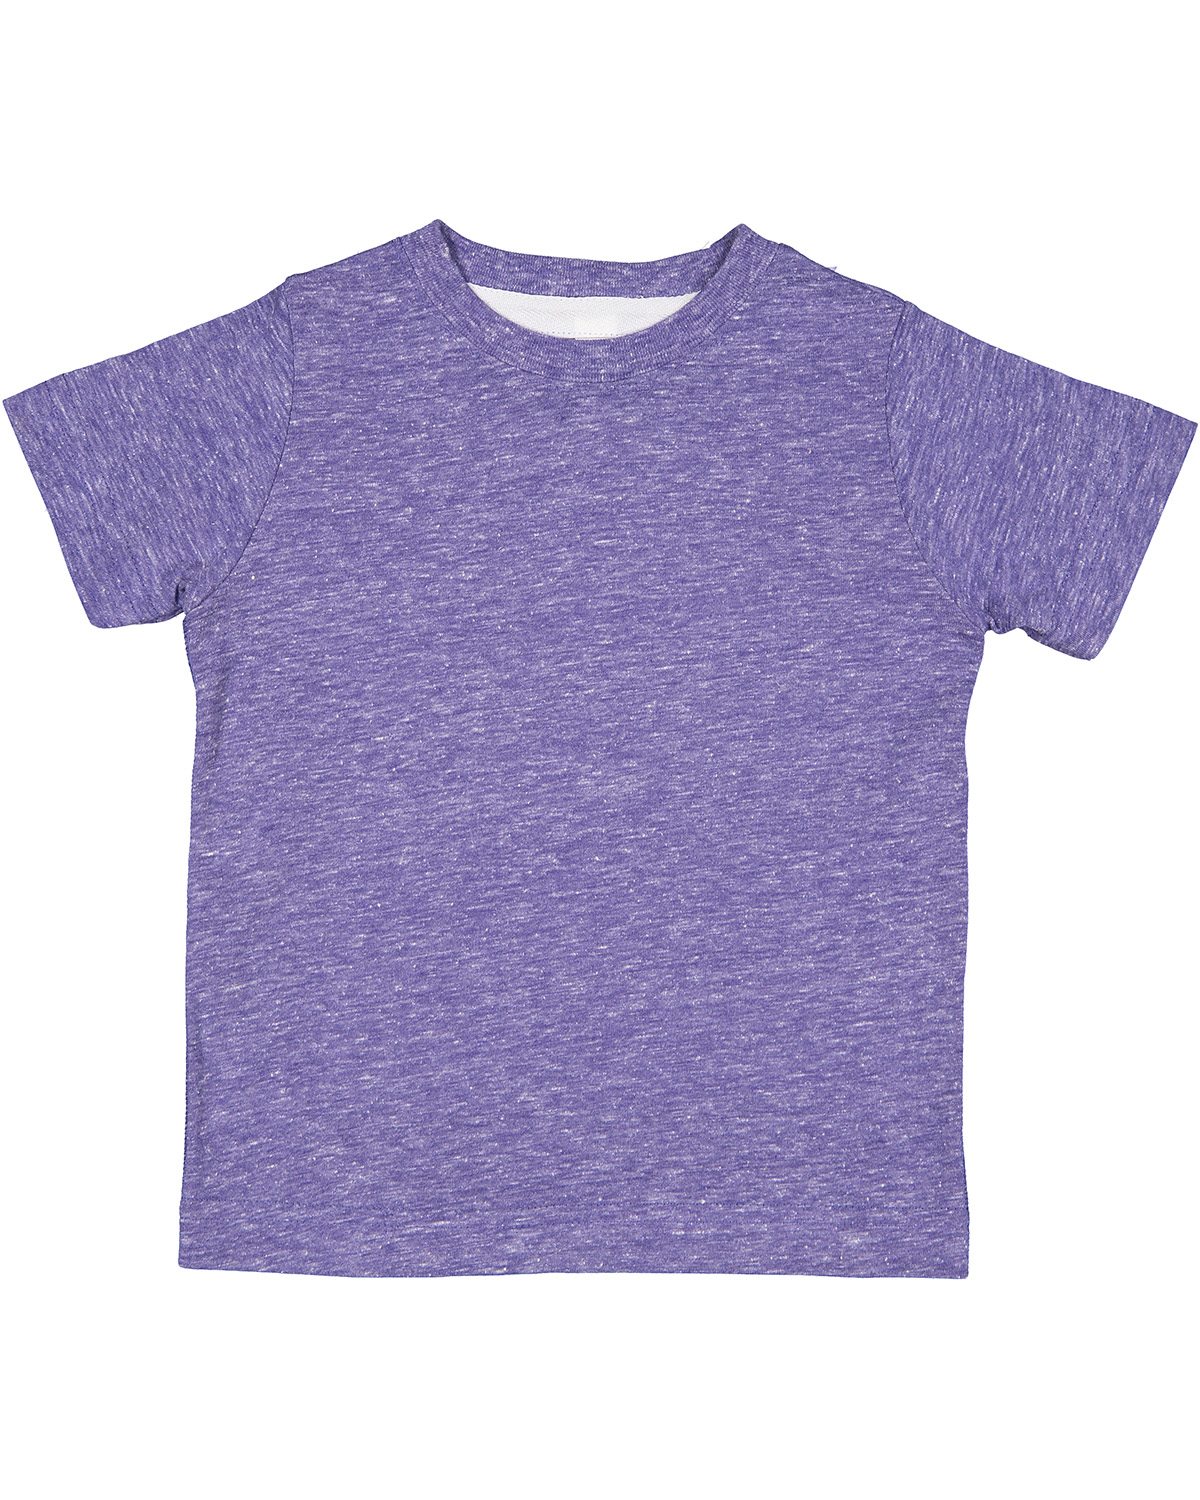 Shirt Melange Shirts Skins | Rabbit T Harborside Toddler Ra 3391 Jiffy